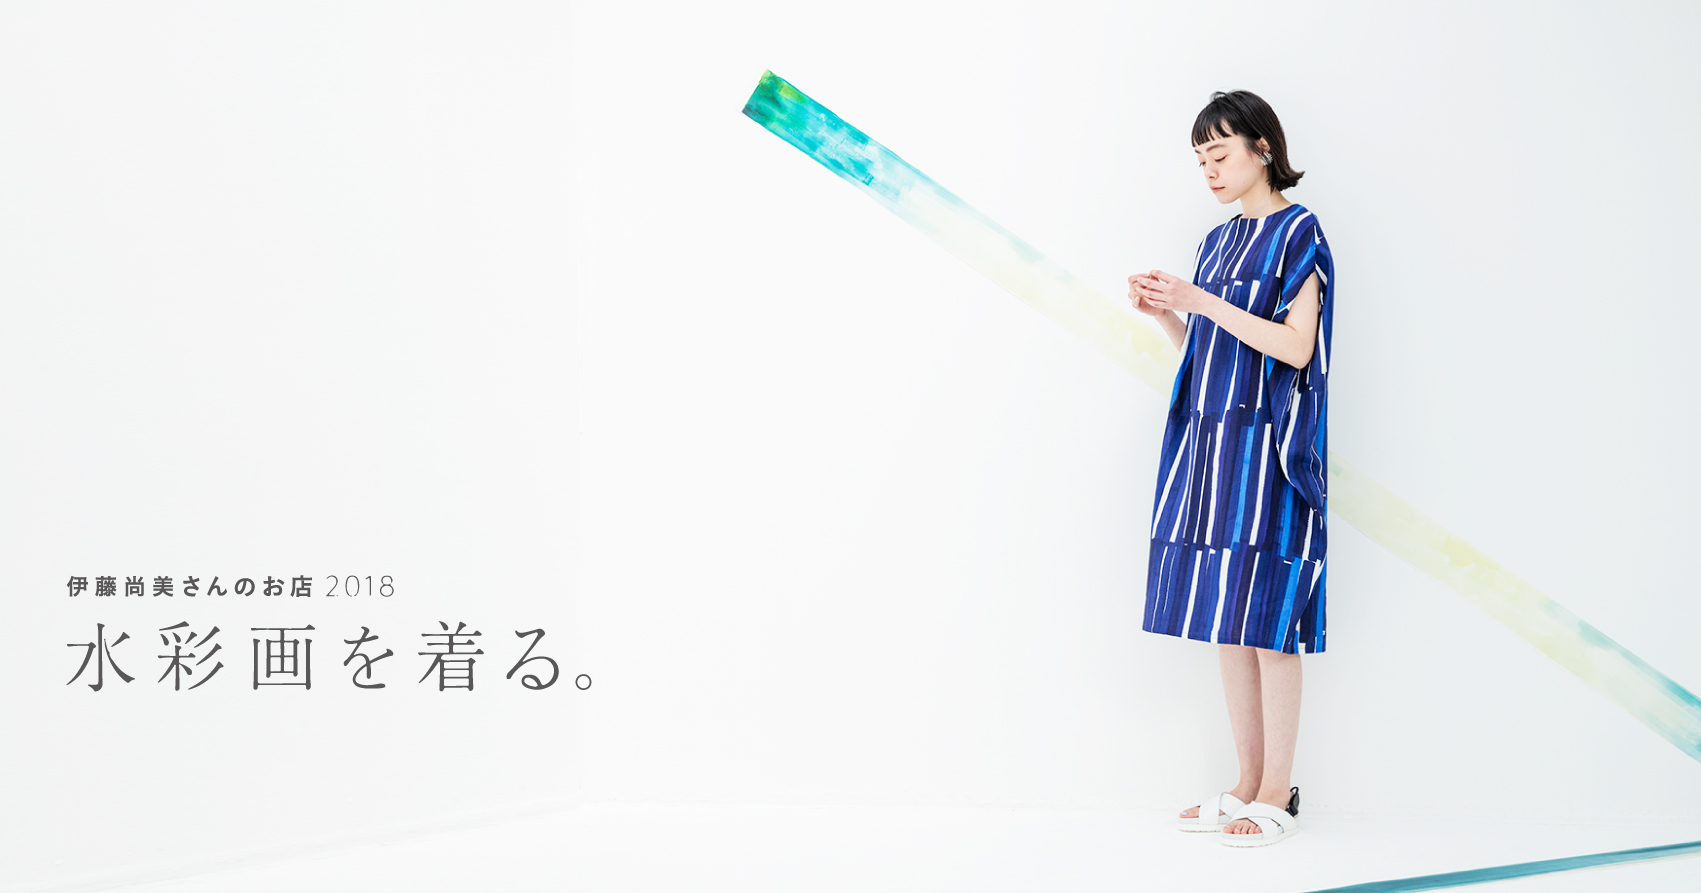 伊藤尚美さんのお店2018 水彩画を着る。 - ほぼ日刊イトイ新聞